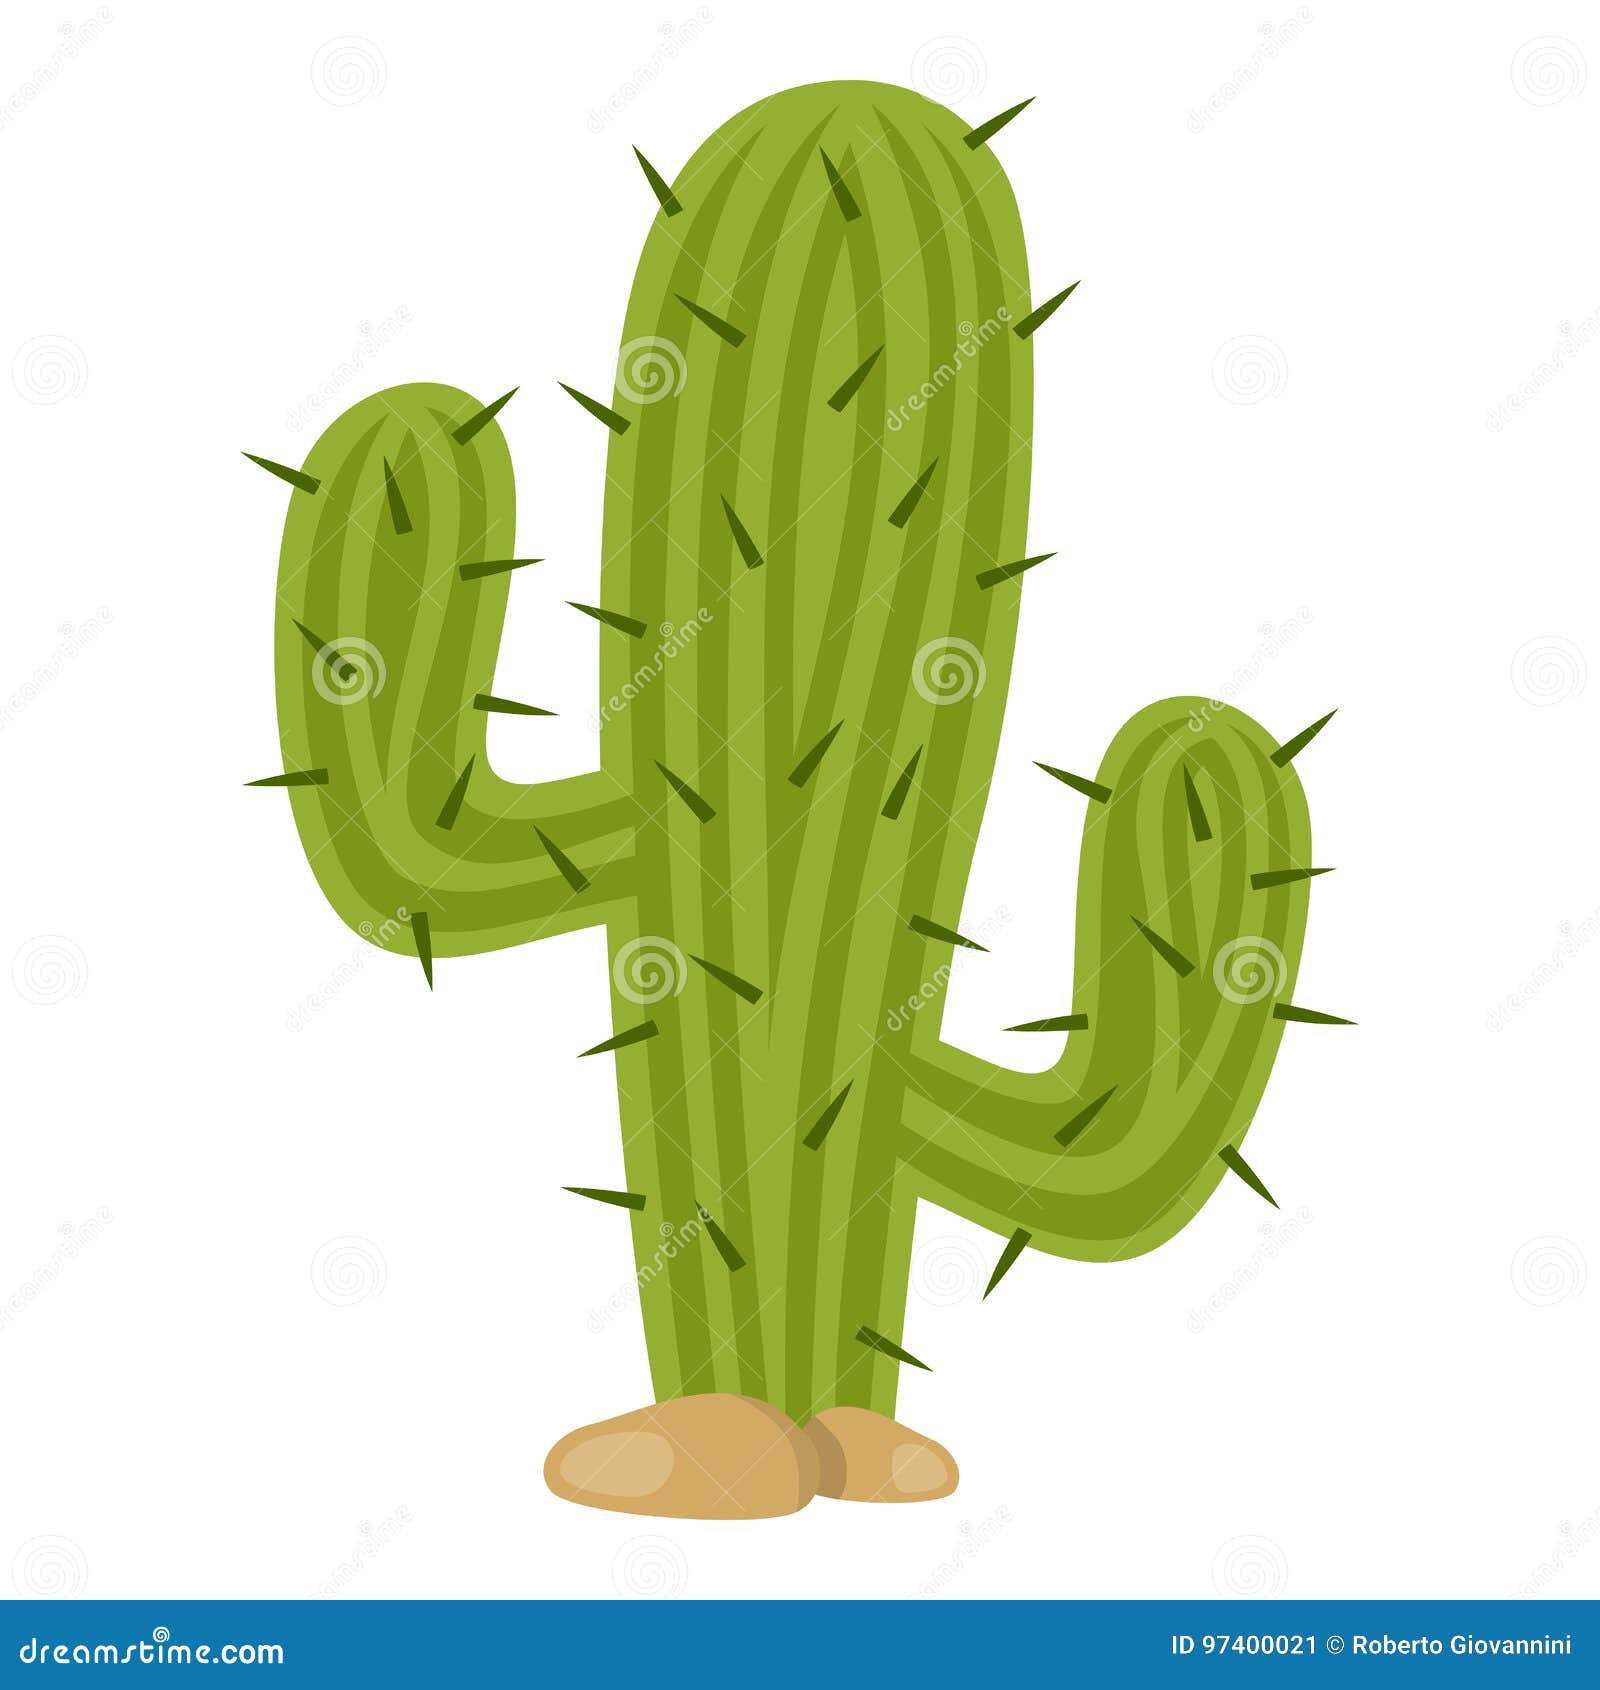 green cactus flat icon  on white